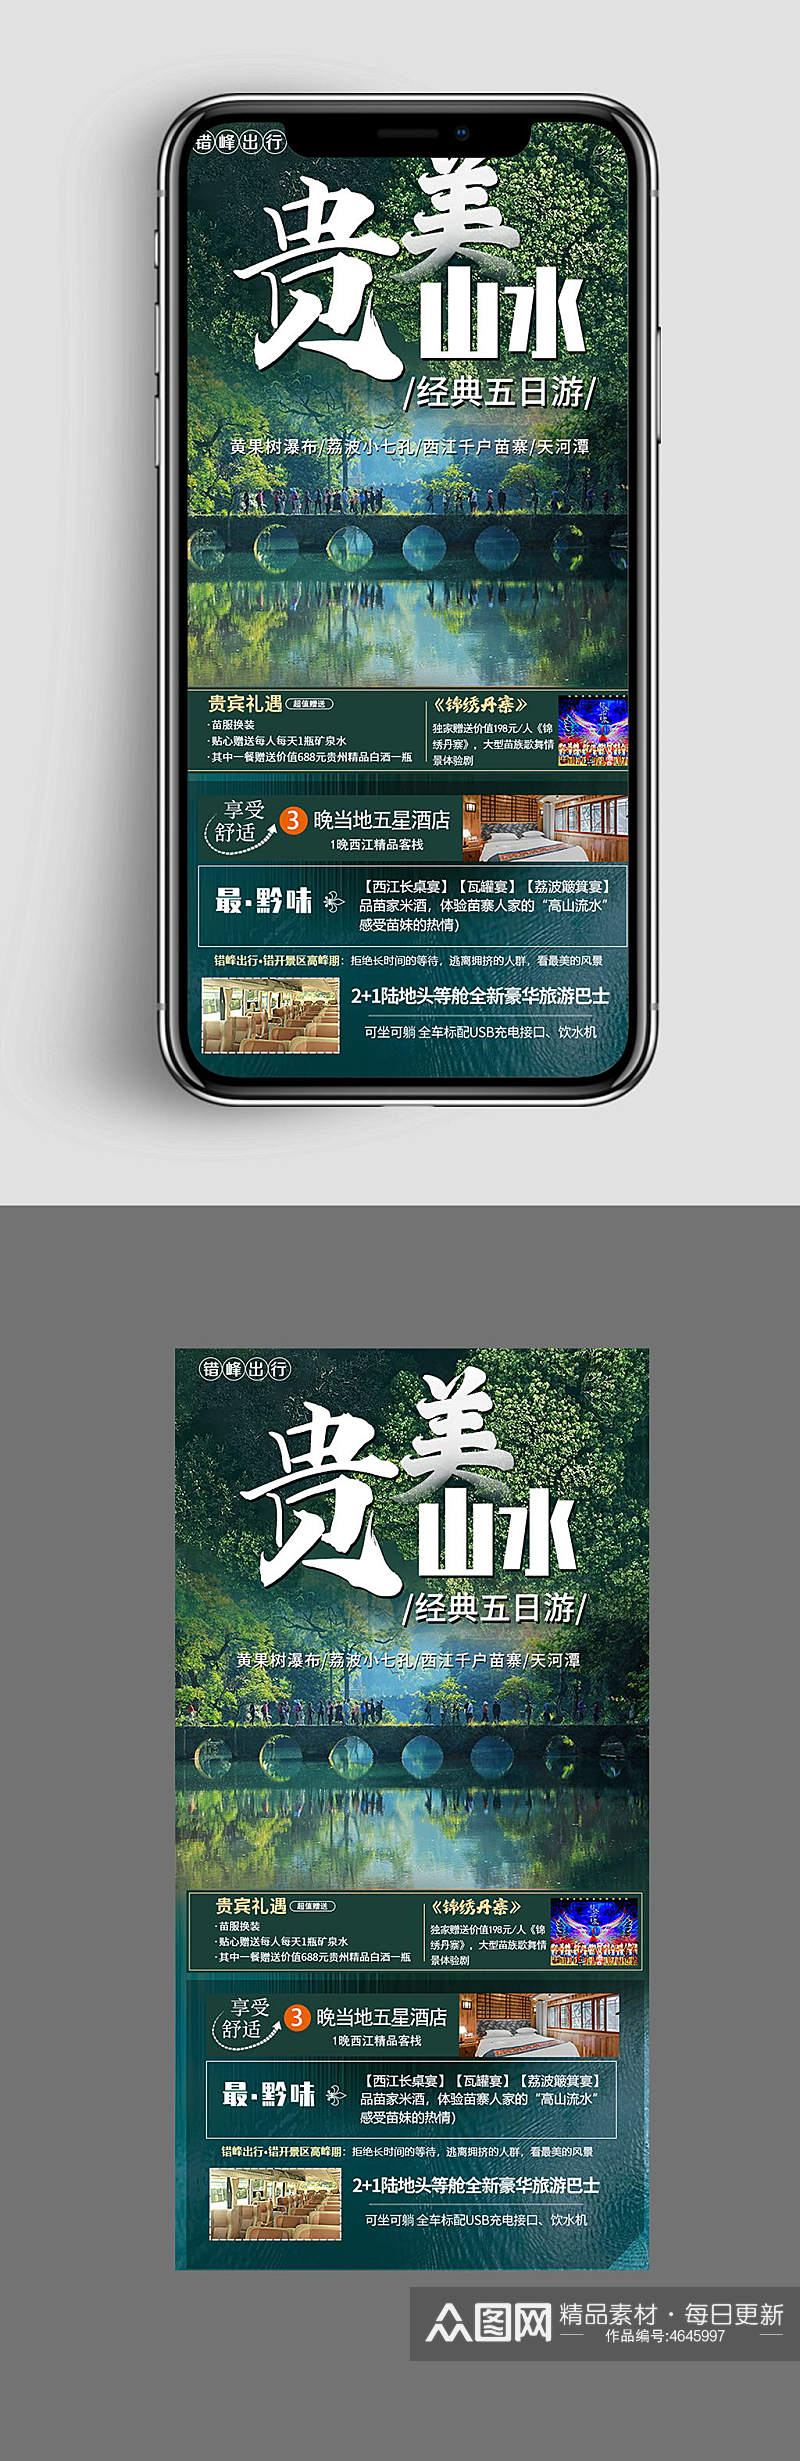 贵州黄果树瀑布旅游海报素材